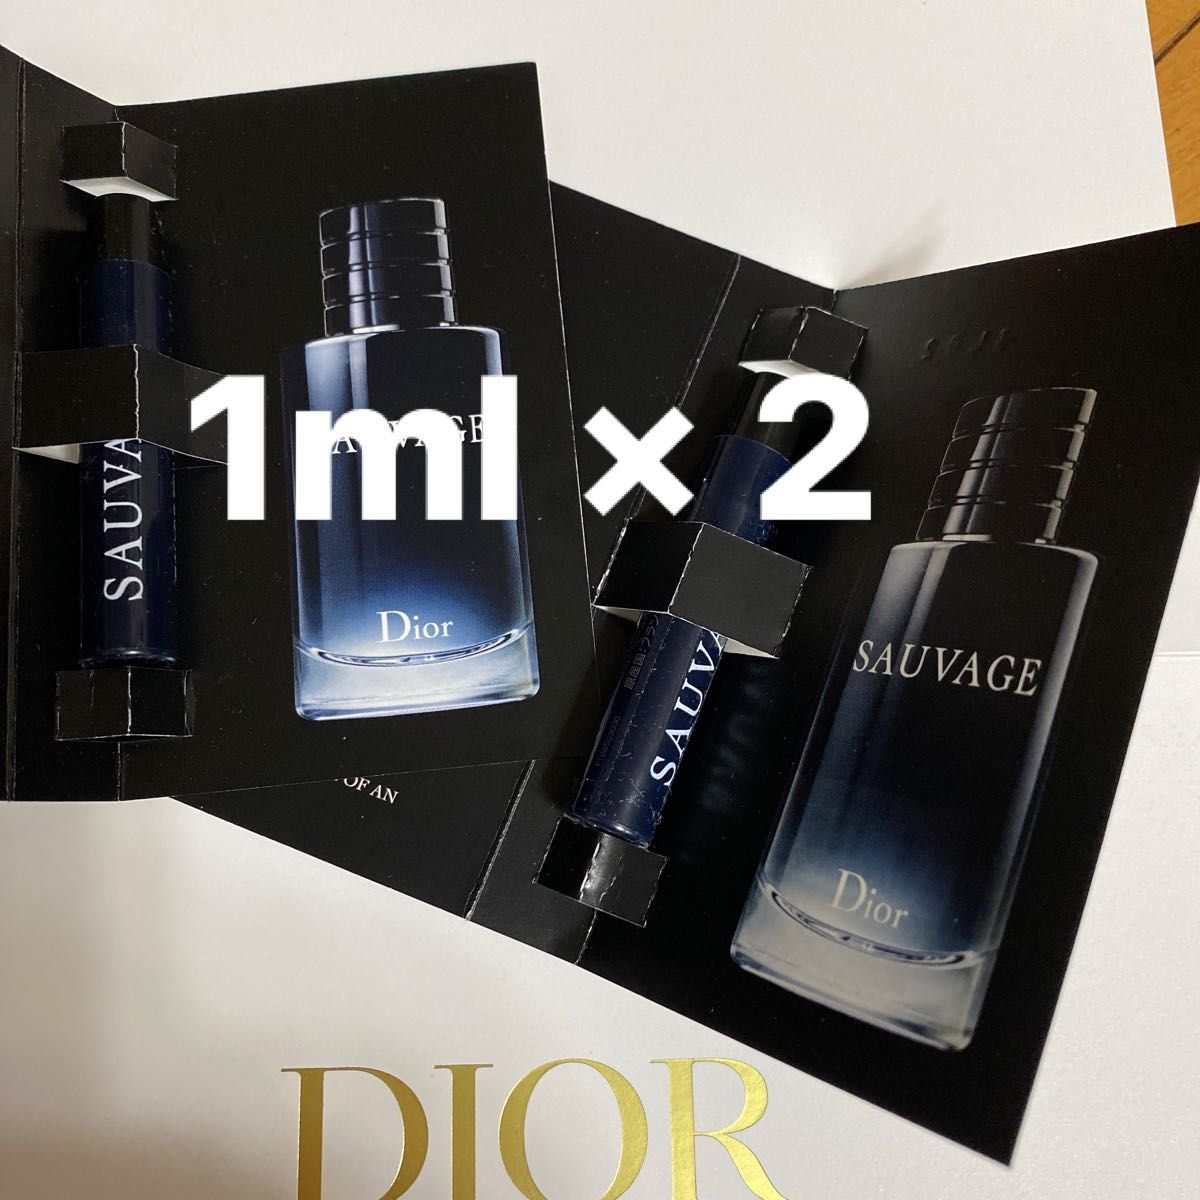 【巾着ポーチ付き】Diorメンズ 香水 ディオール ソヴァージュ ミニスプレー 2個 巾着 セット　 SAUVAGE  試供品　 